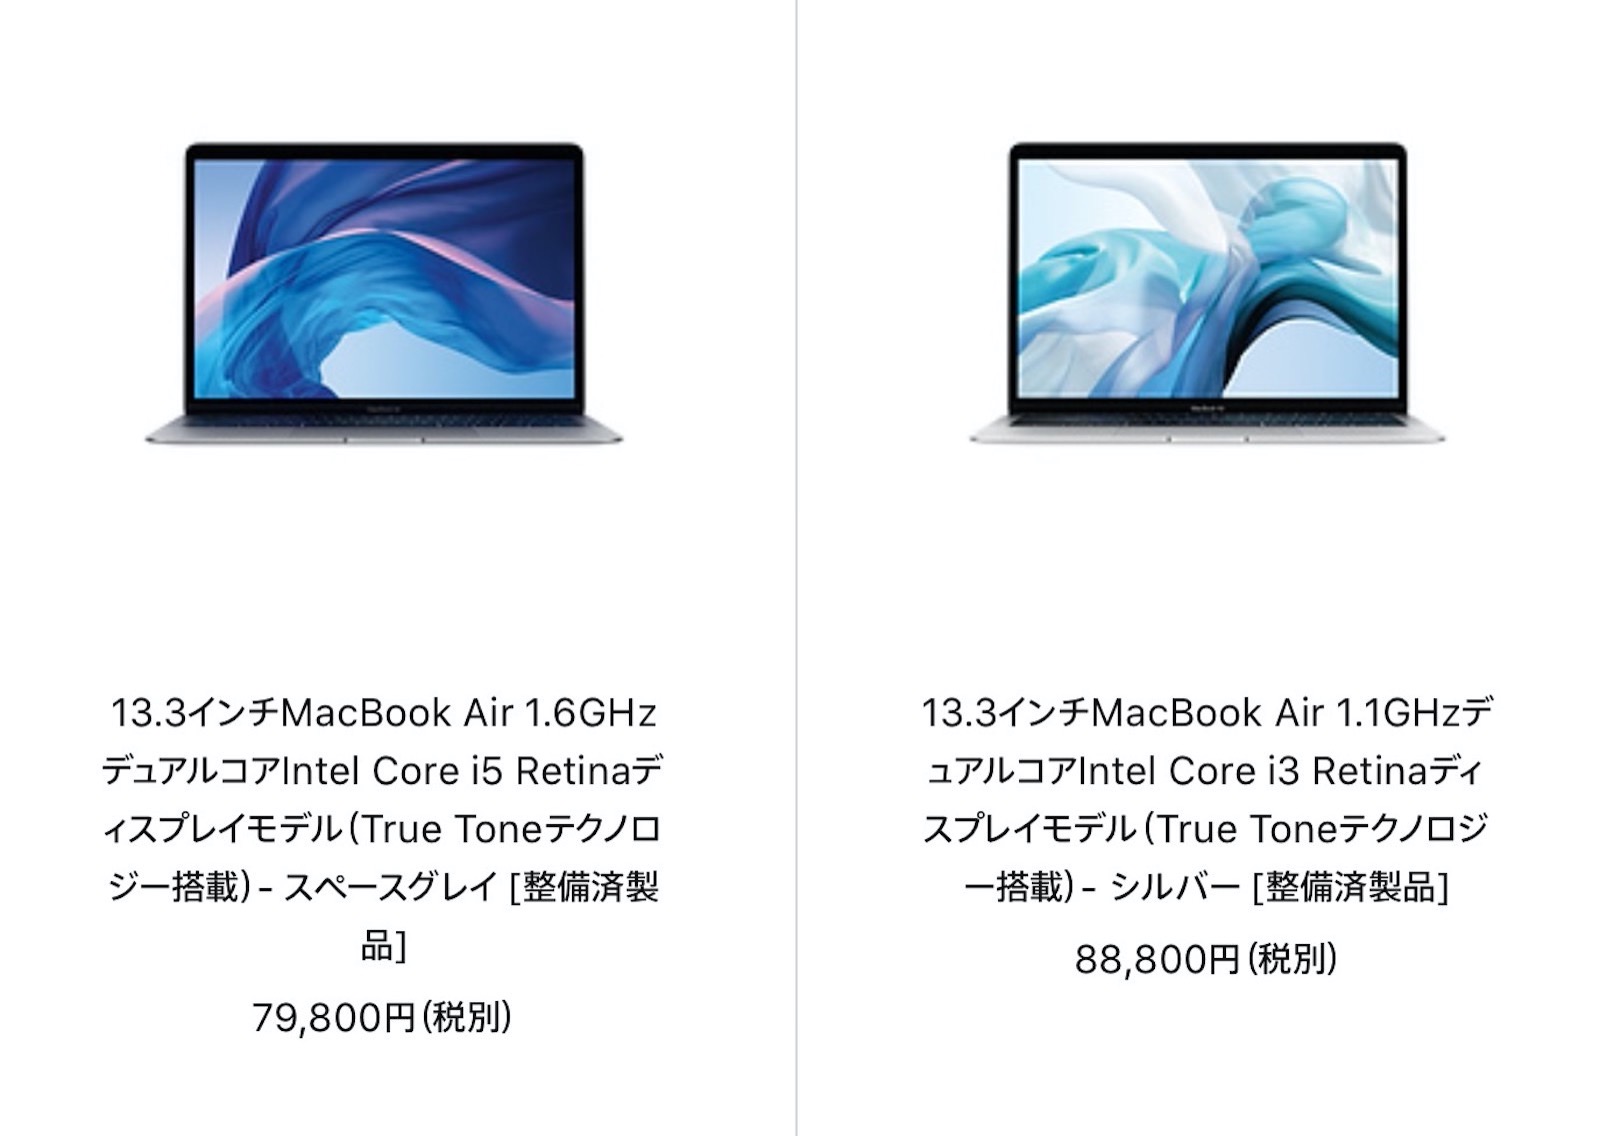 apple-refurbished-macbook-air-20200807.jpg